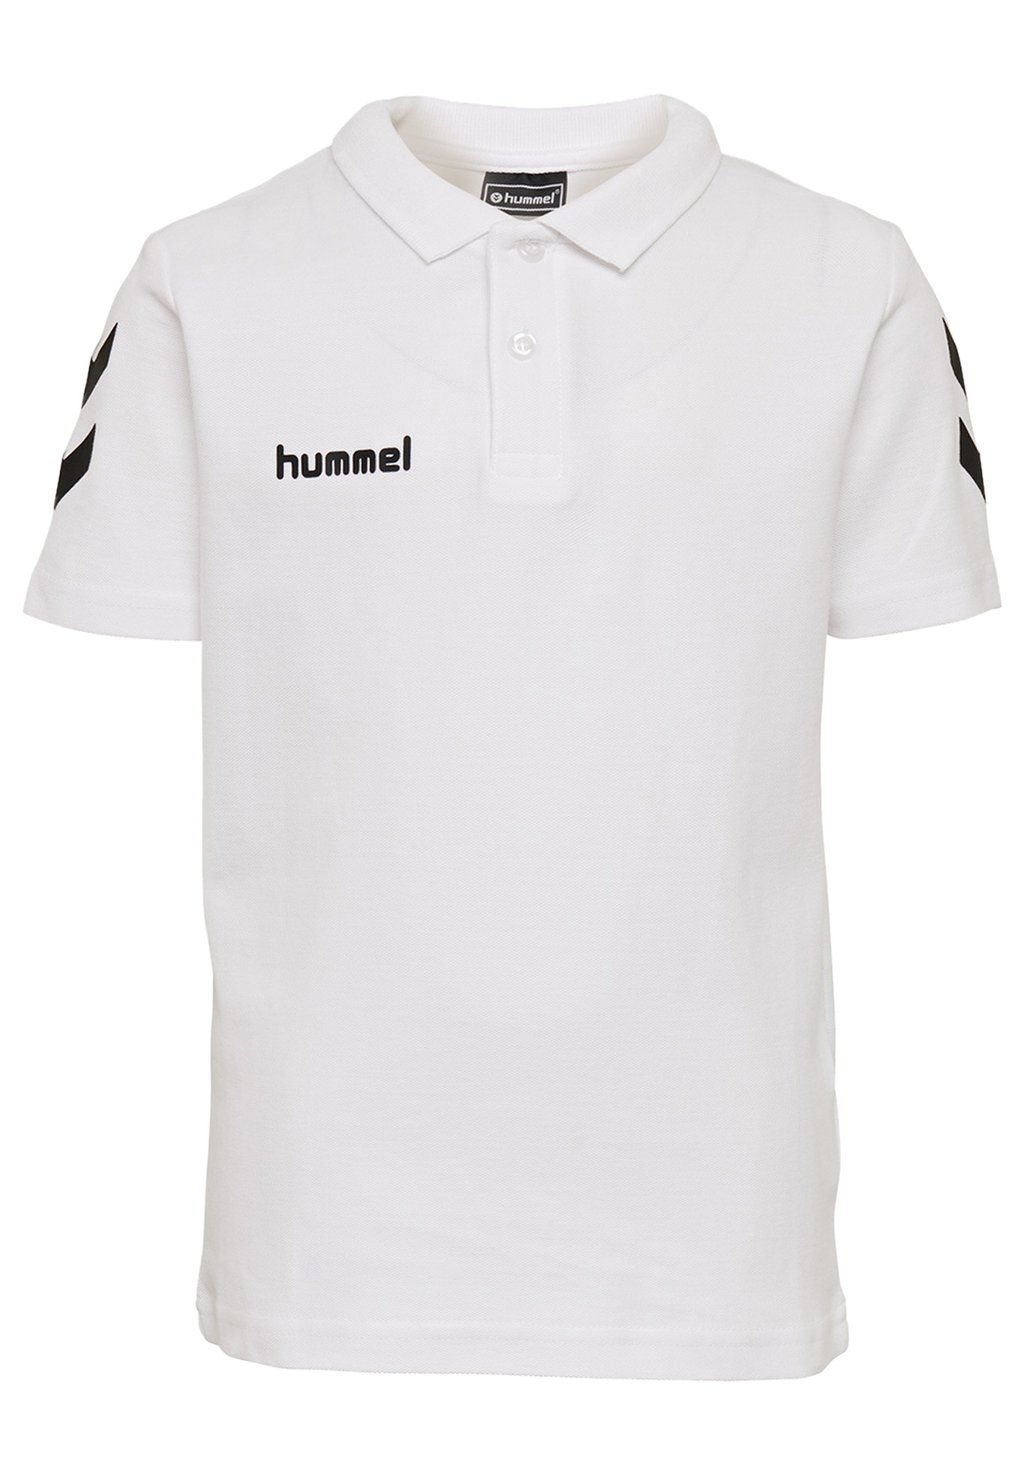 Рубашка-поло Hummel, белая